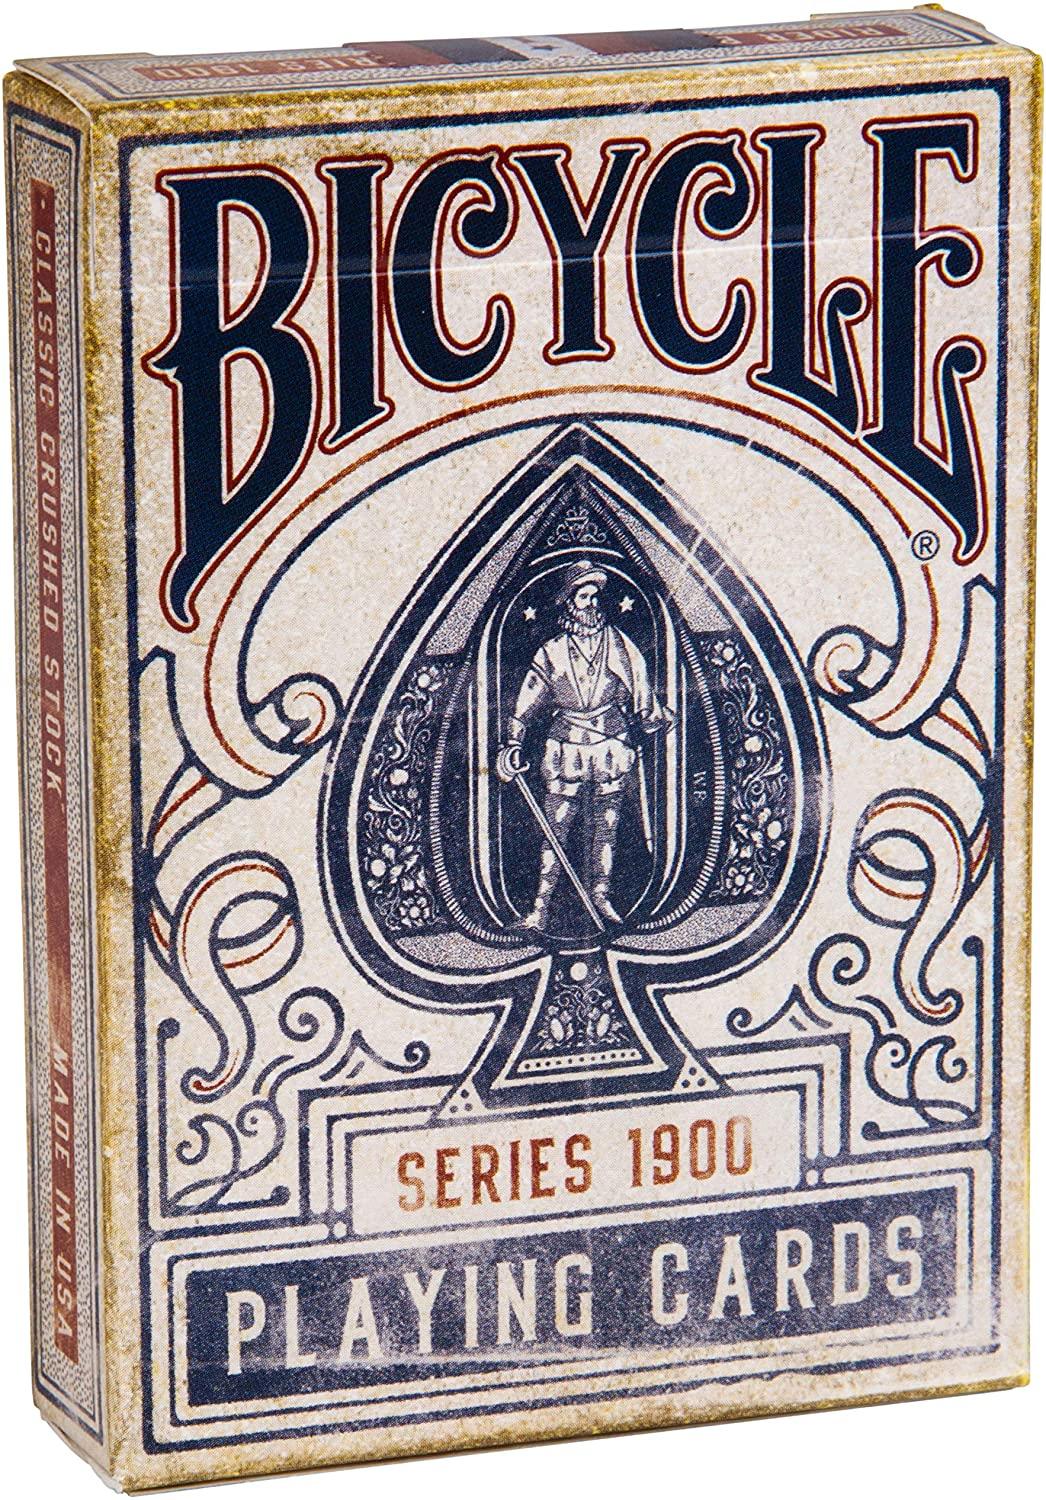 BICYCLE 1900 PLAYING CARDS - Pegani